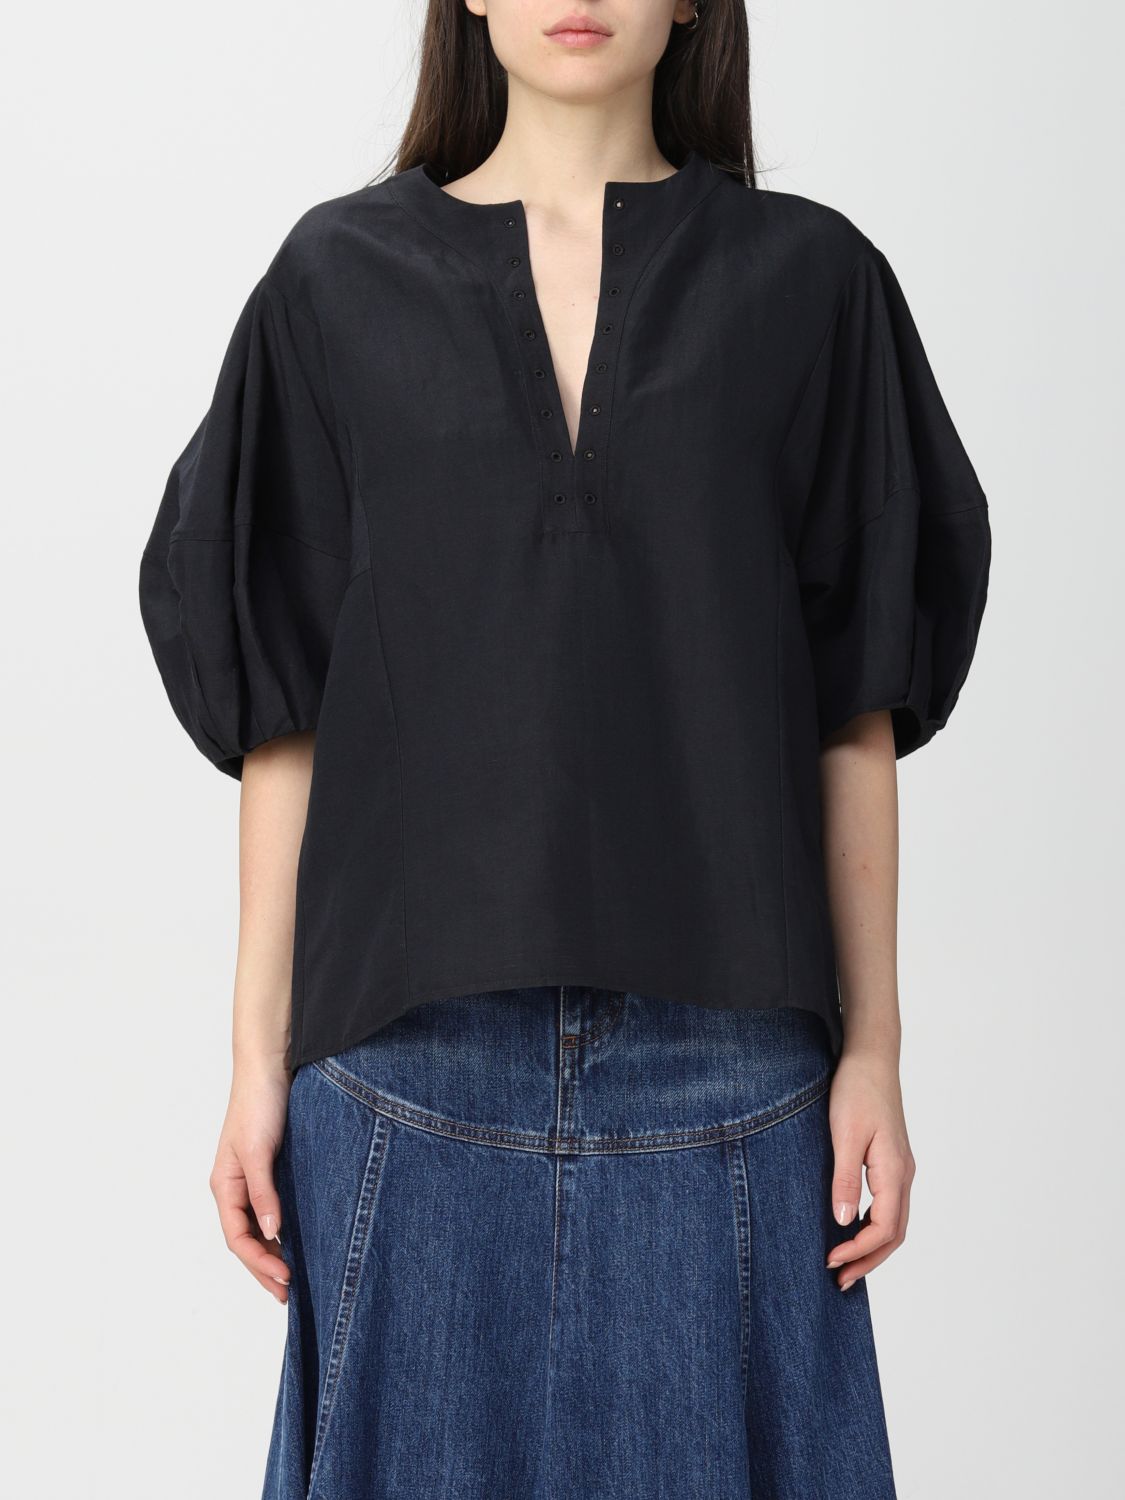 CHLOÉ: Shirt women ChloÉ - Black | Chloé top C22SHT05033 online at ...